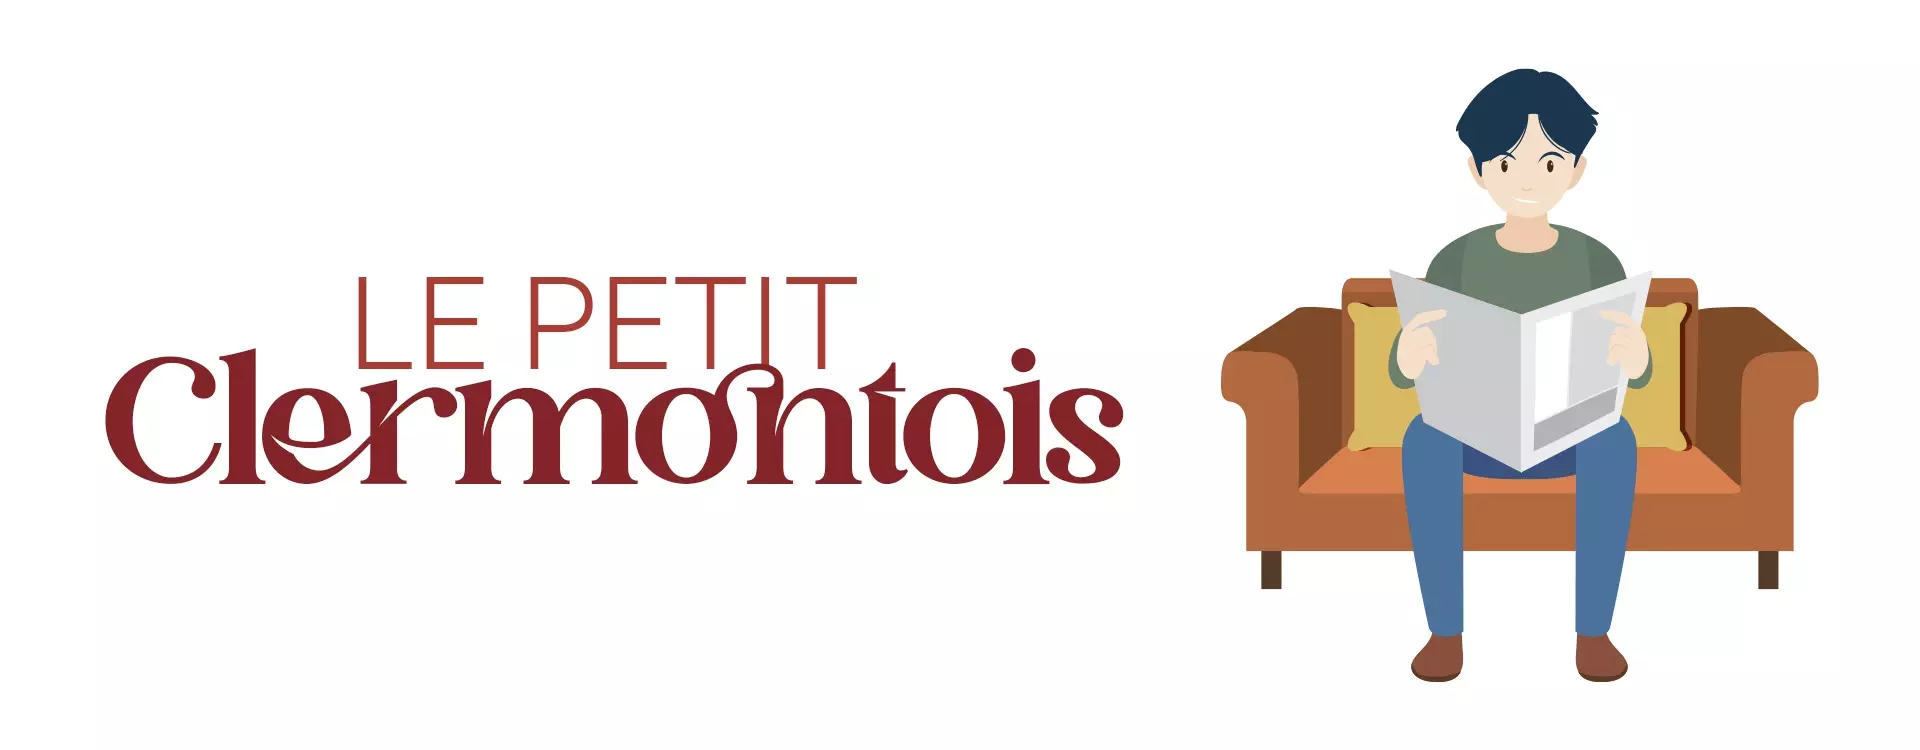 Le Petit Clermontois, magazine de Clermont en Genevois